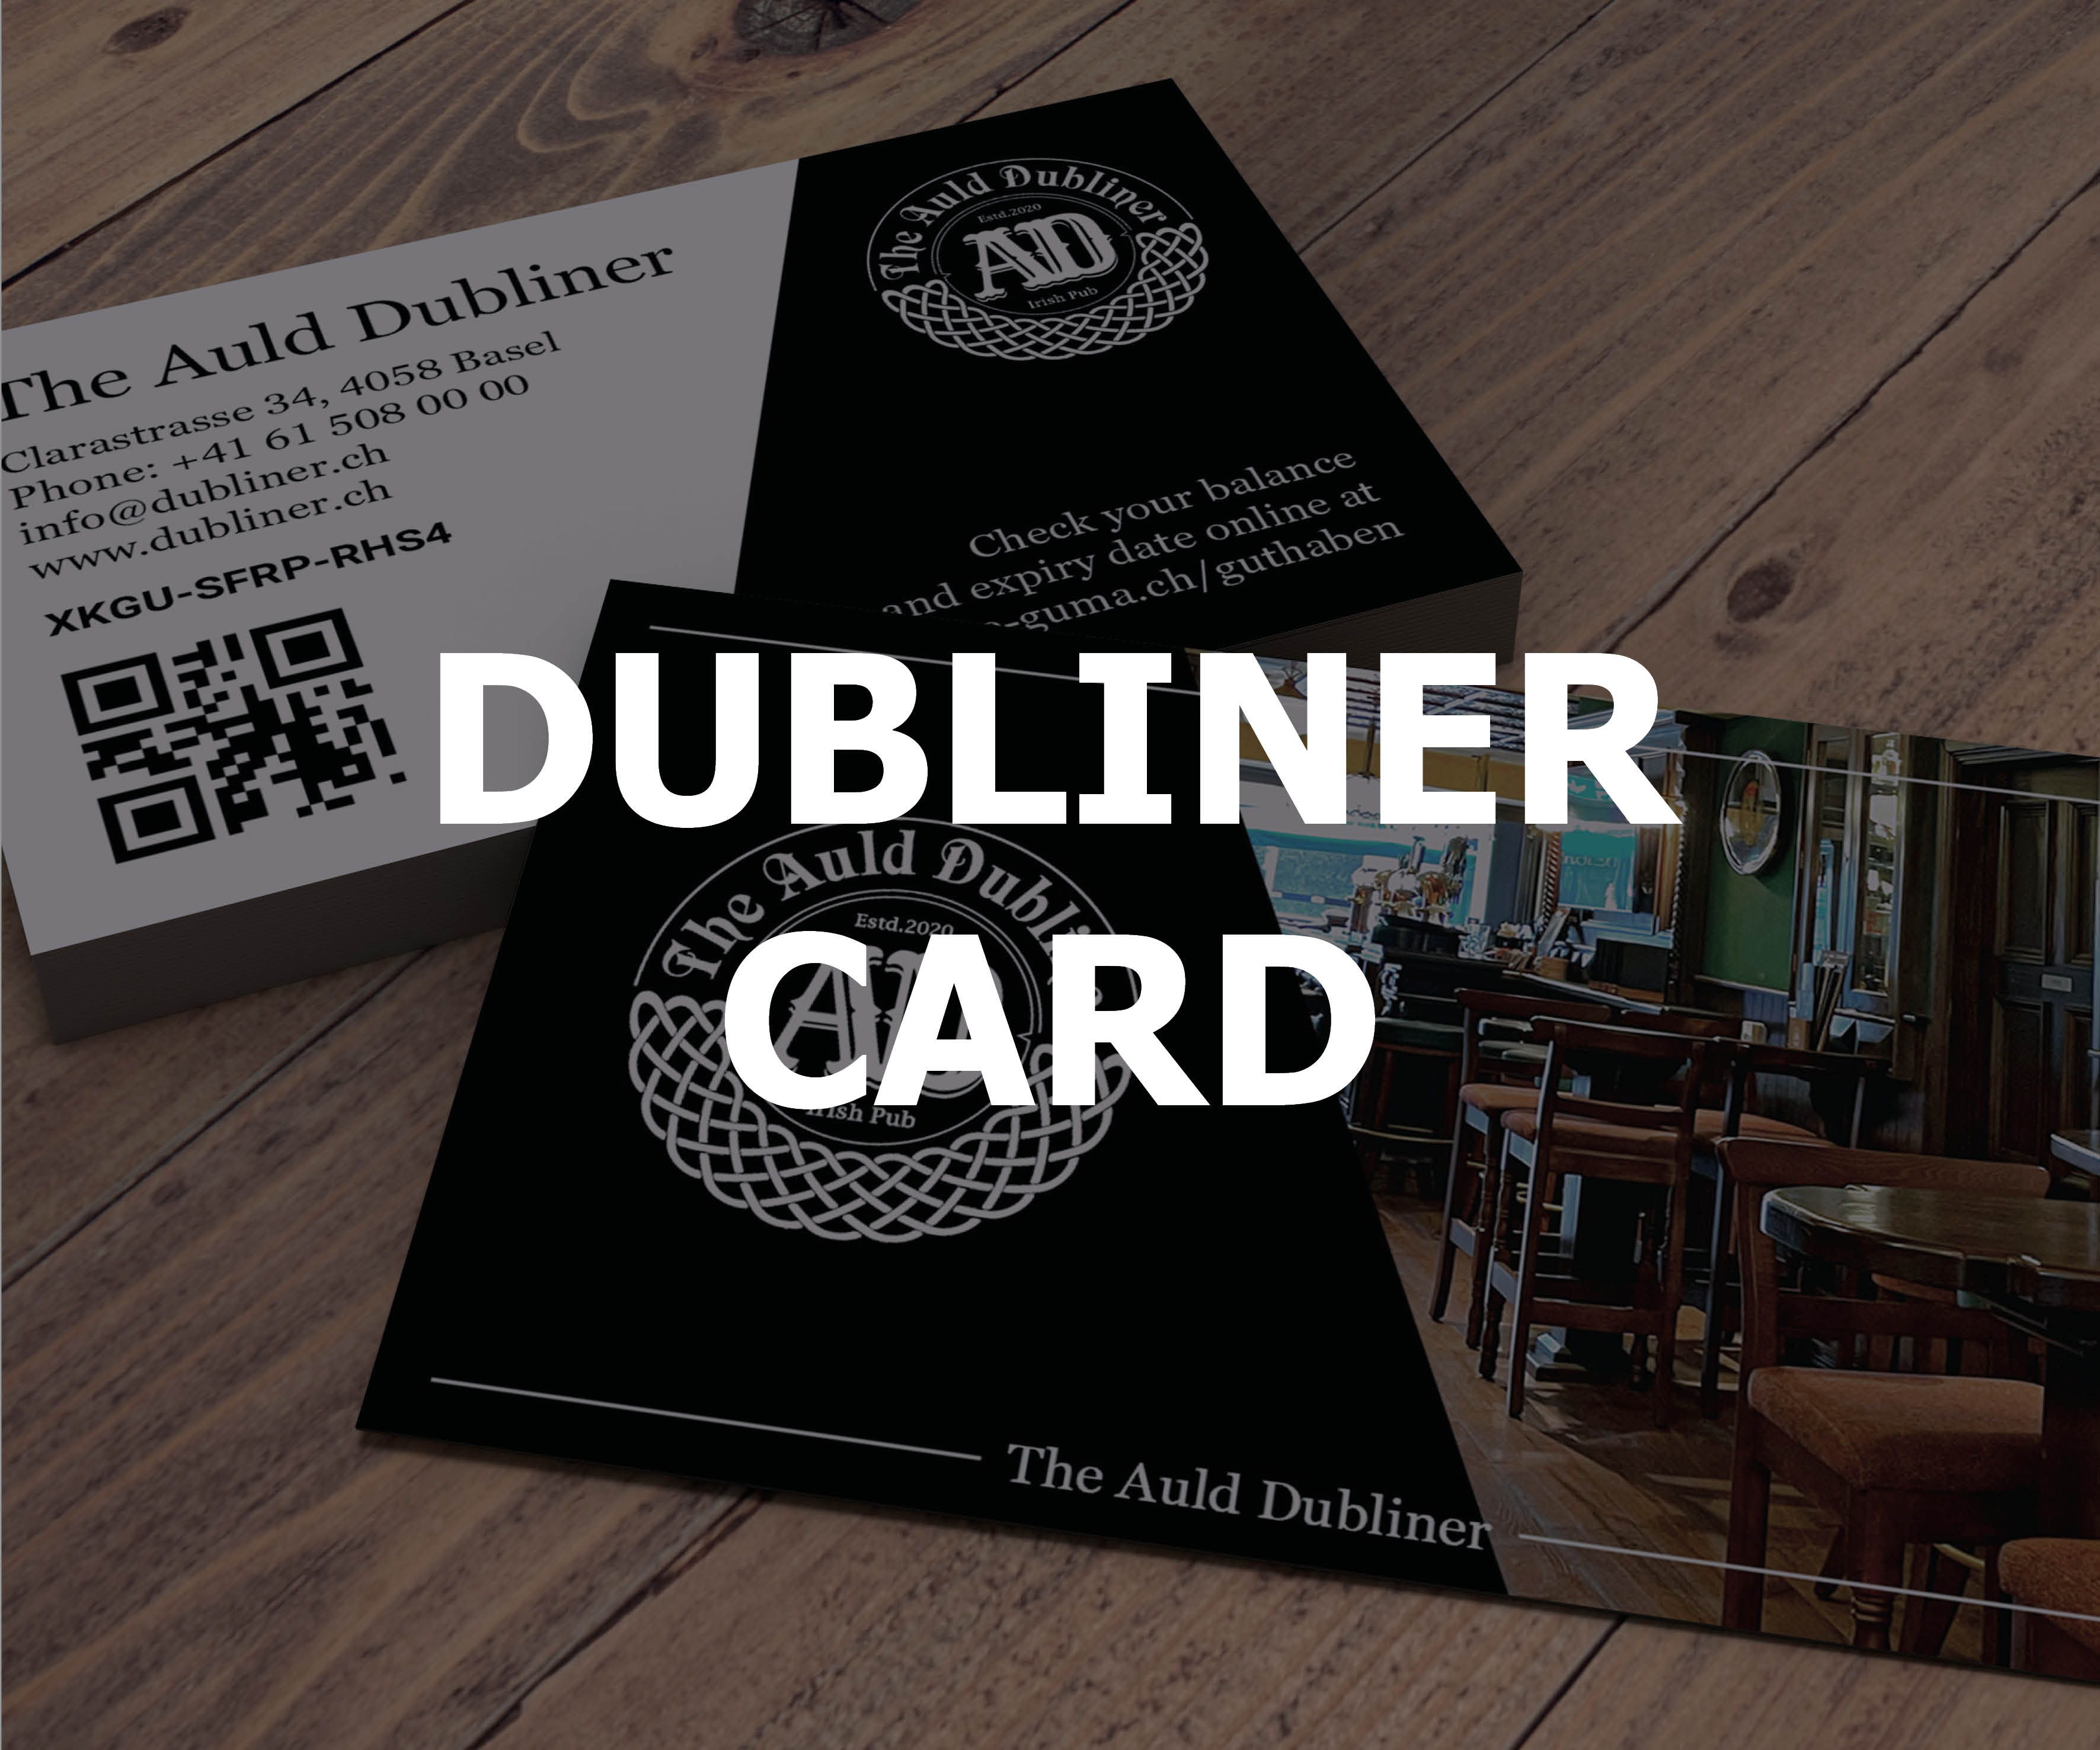 Dubliner Card